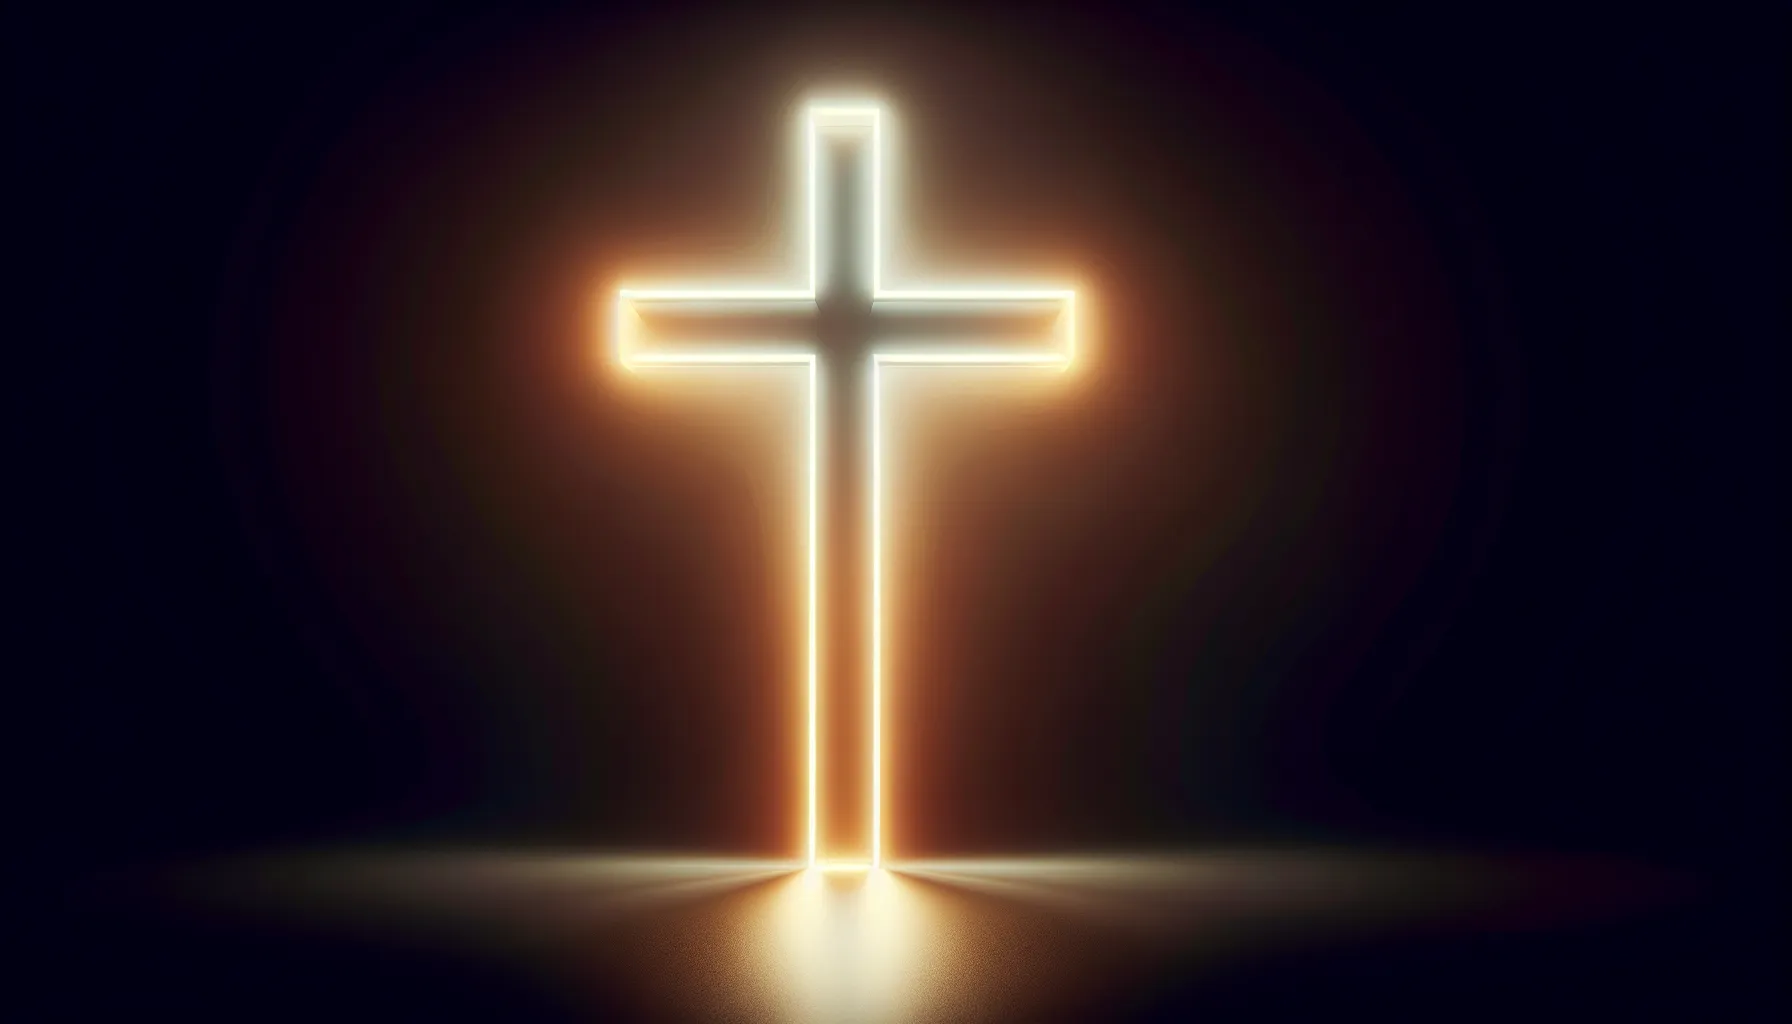 Imagen de una cruz iluminada en un fondo oscuro